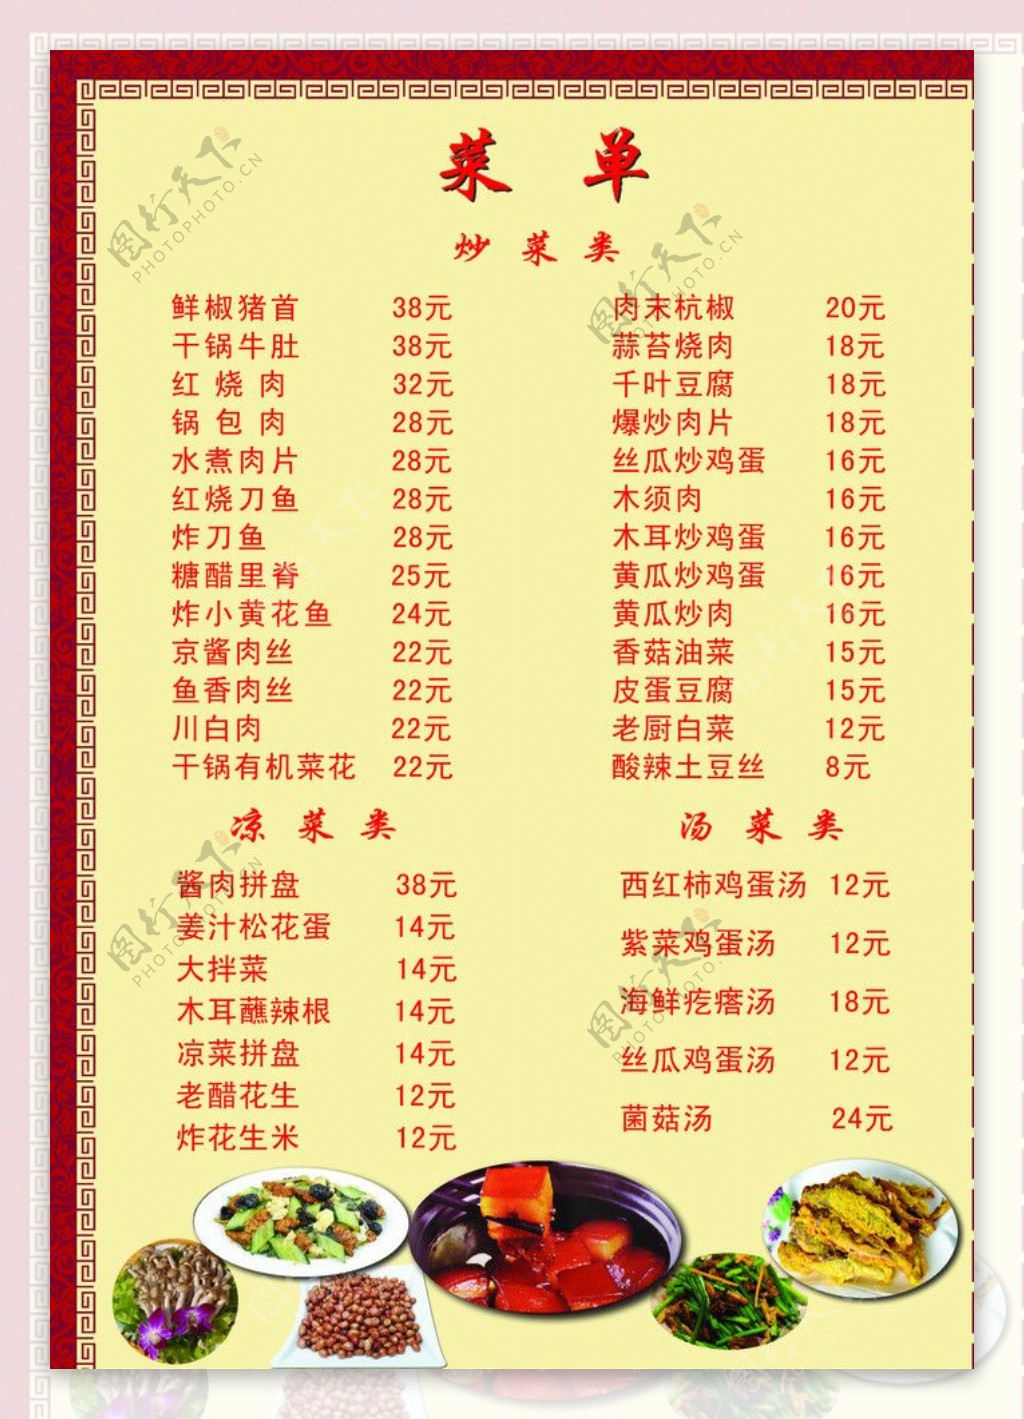 水饺菜单菜品图片